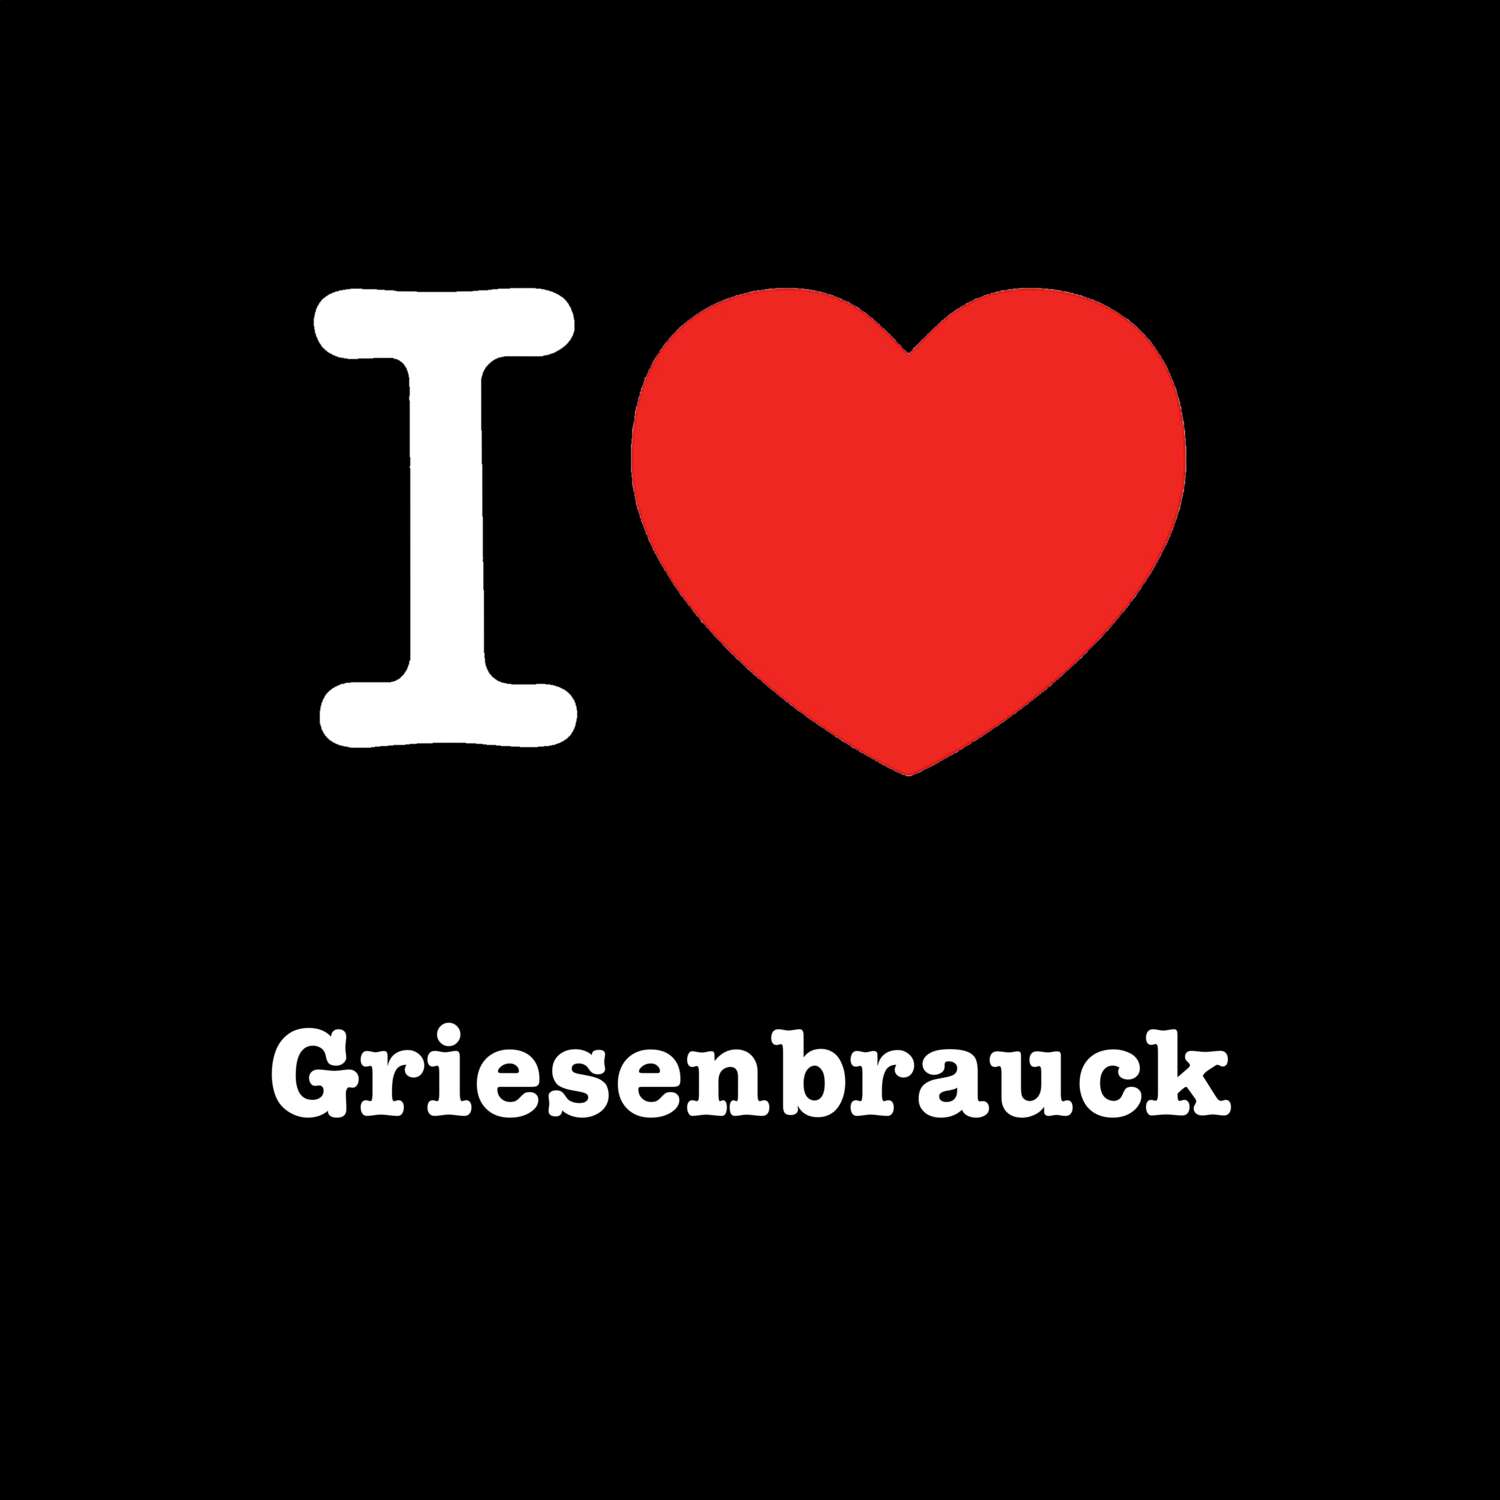 Griesenbrauck T-Shirt »I love«